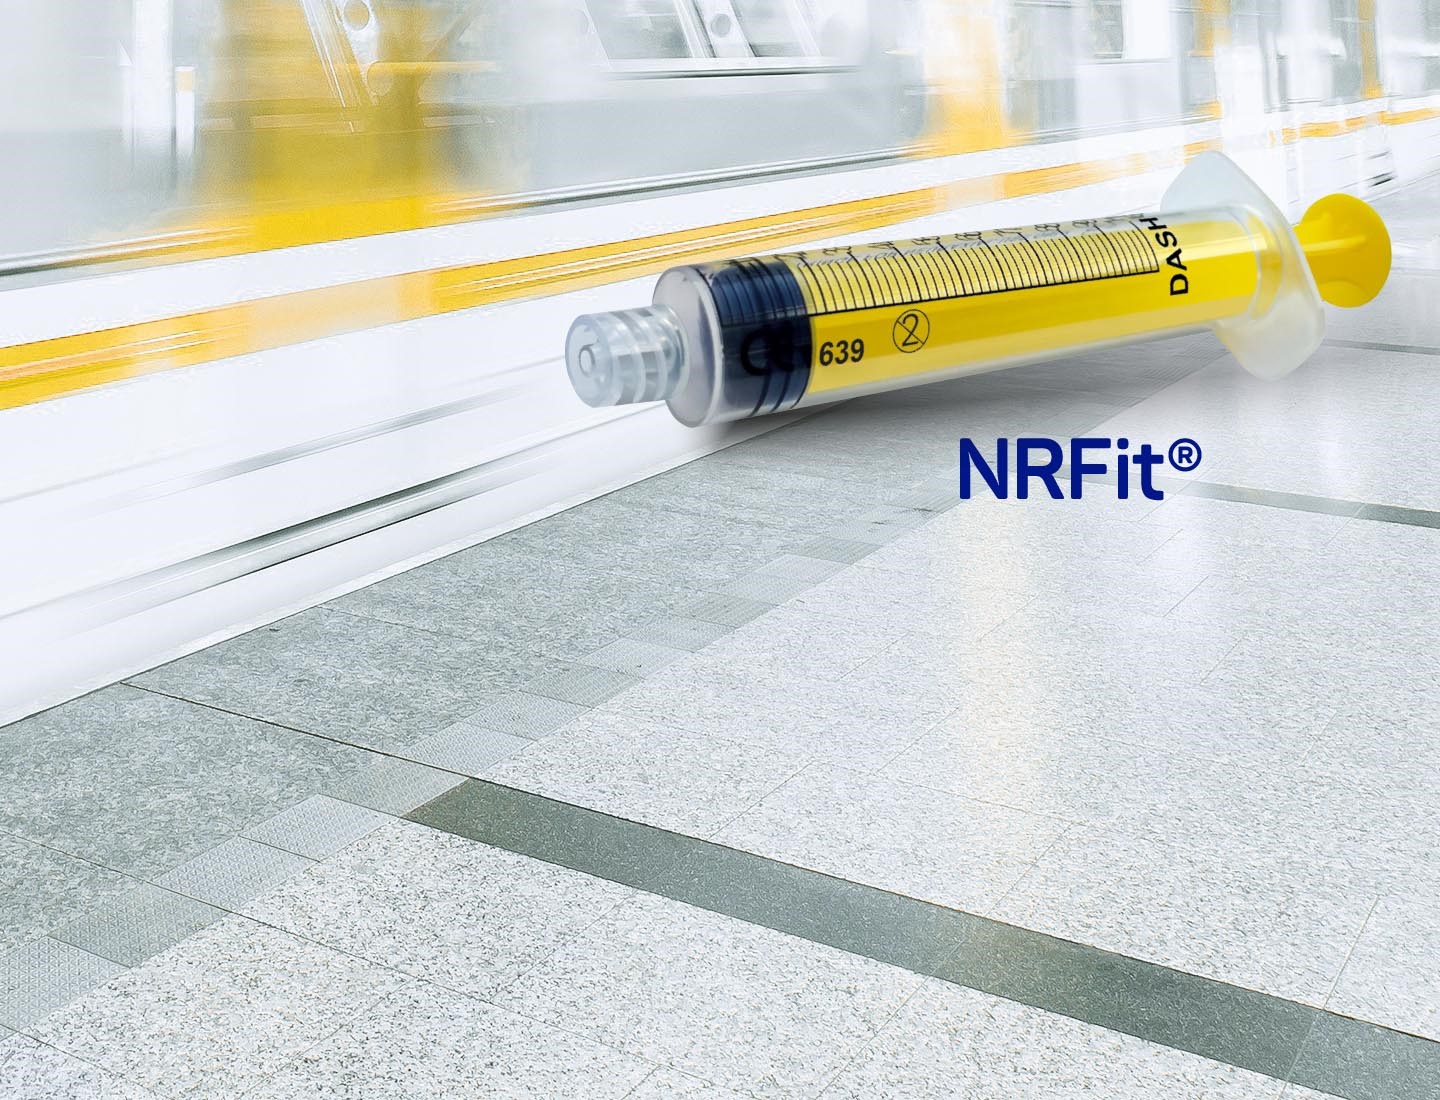 NRFit Spritze vor einem Zug